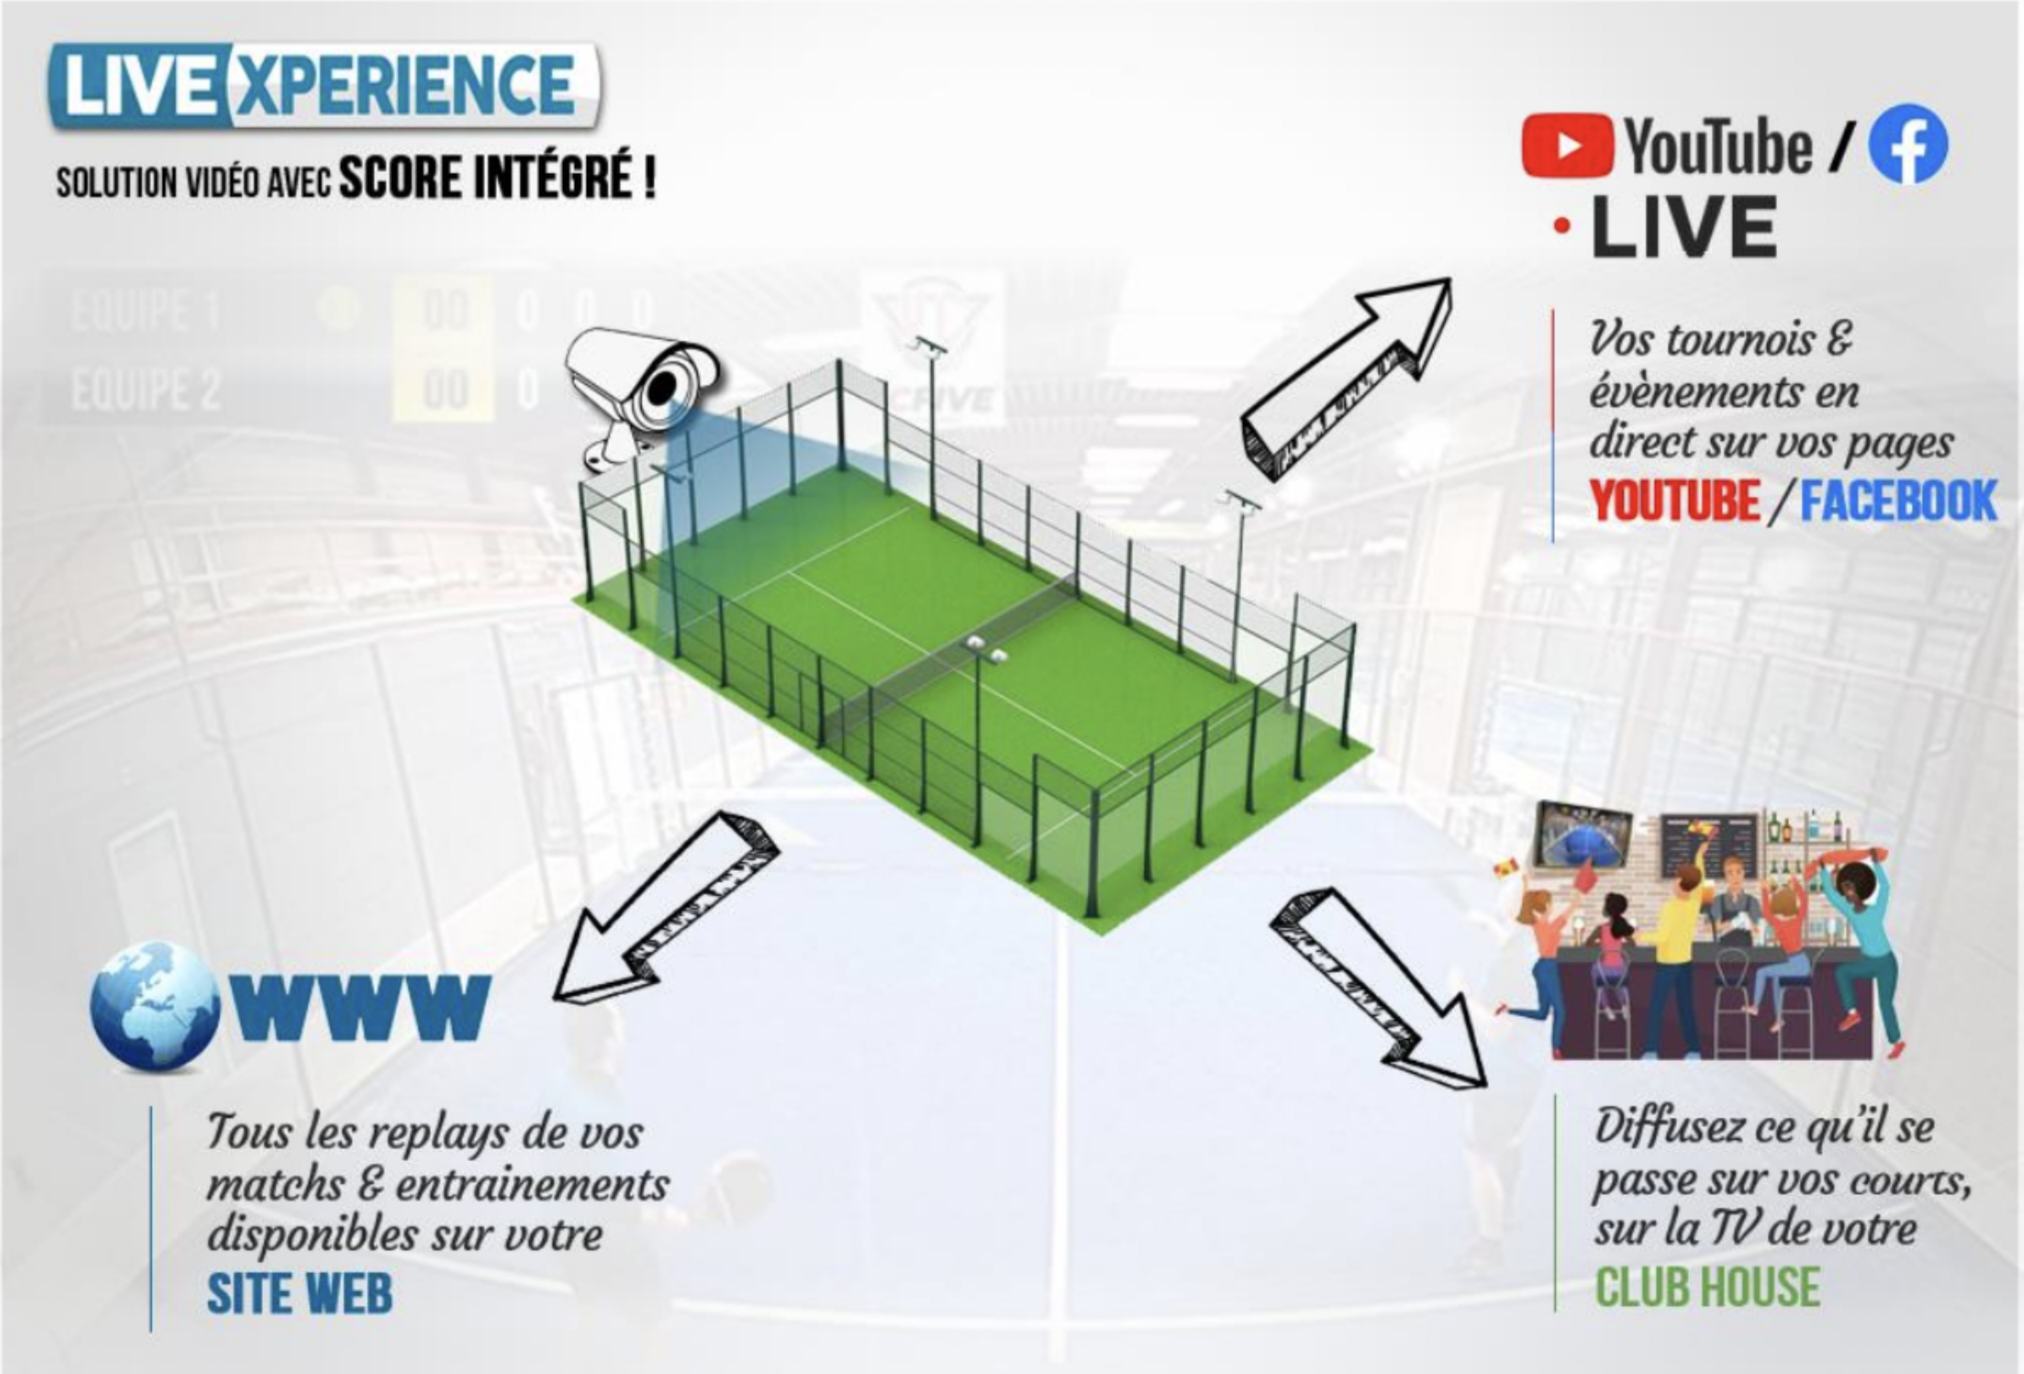 LiveXperience: oferecendo máxima visibilidade aos clubes